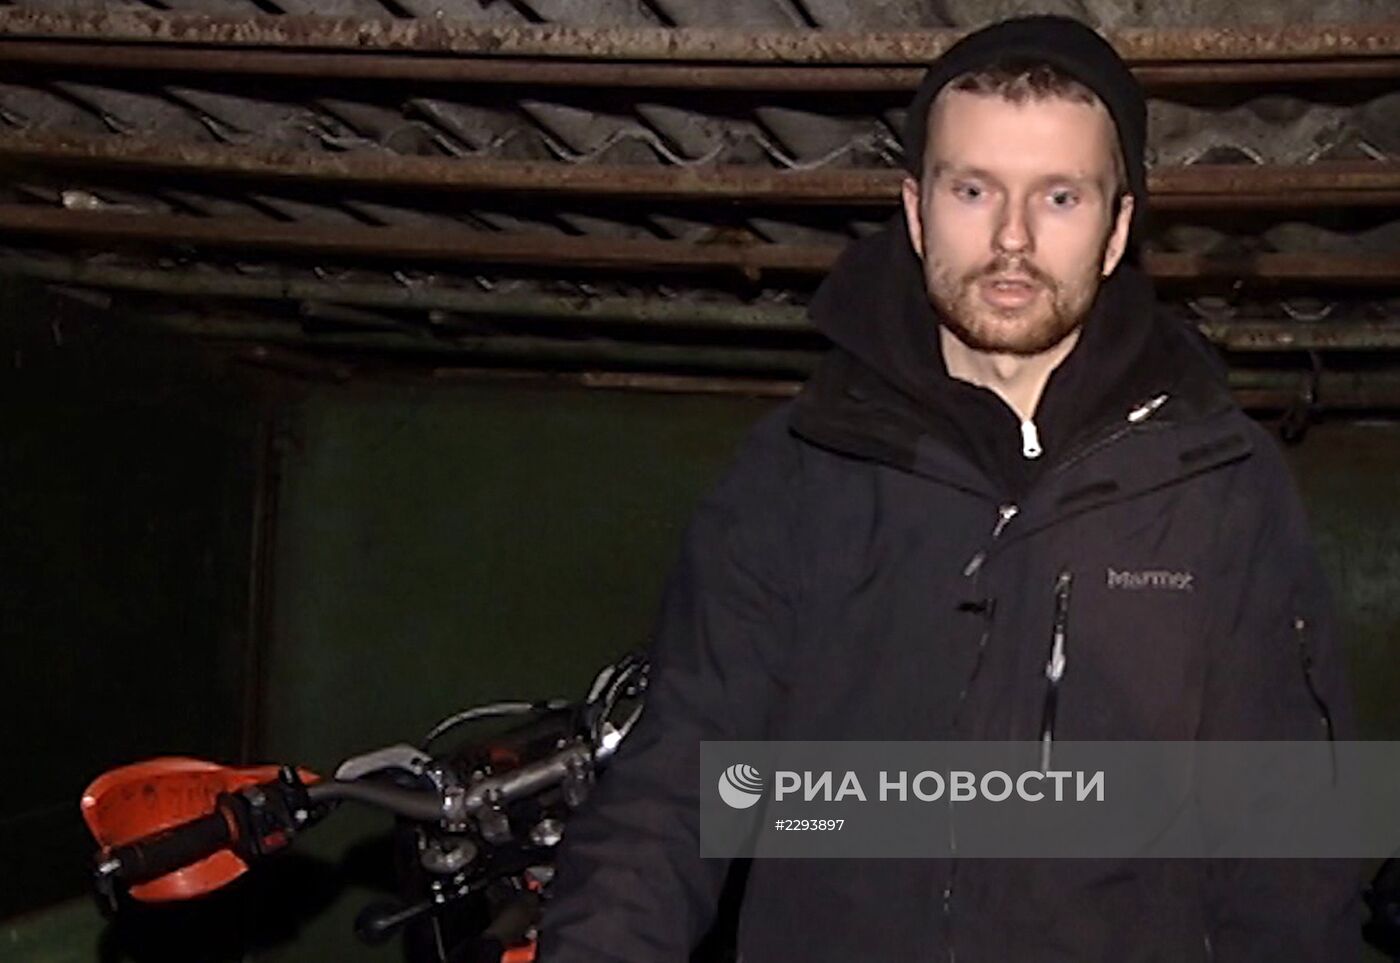 Байкер, проехавший по перрону станции "Войковская", задержан в Москве